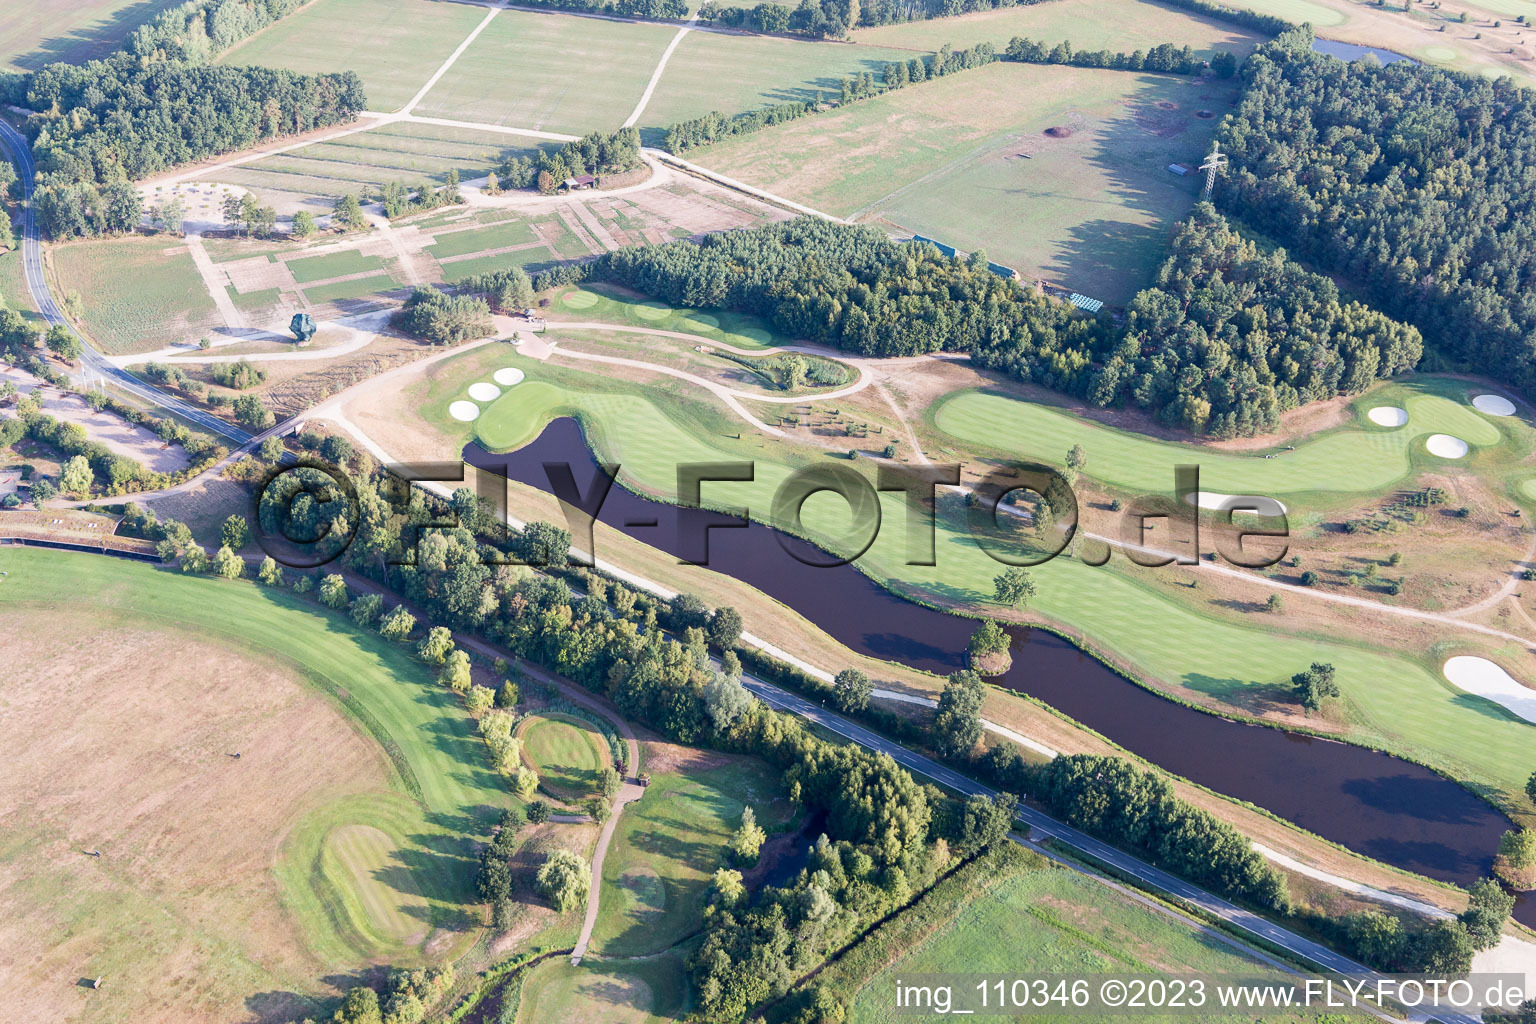 Photographie aérienne de Terrain du parcours de golf Green Eagle à Winsen (Luhe) dans le département Basse-Saxe, Allemagne